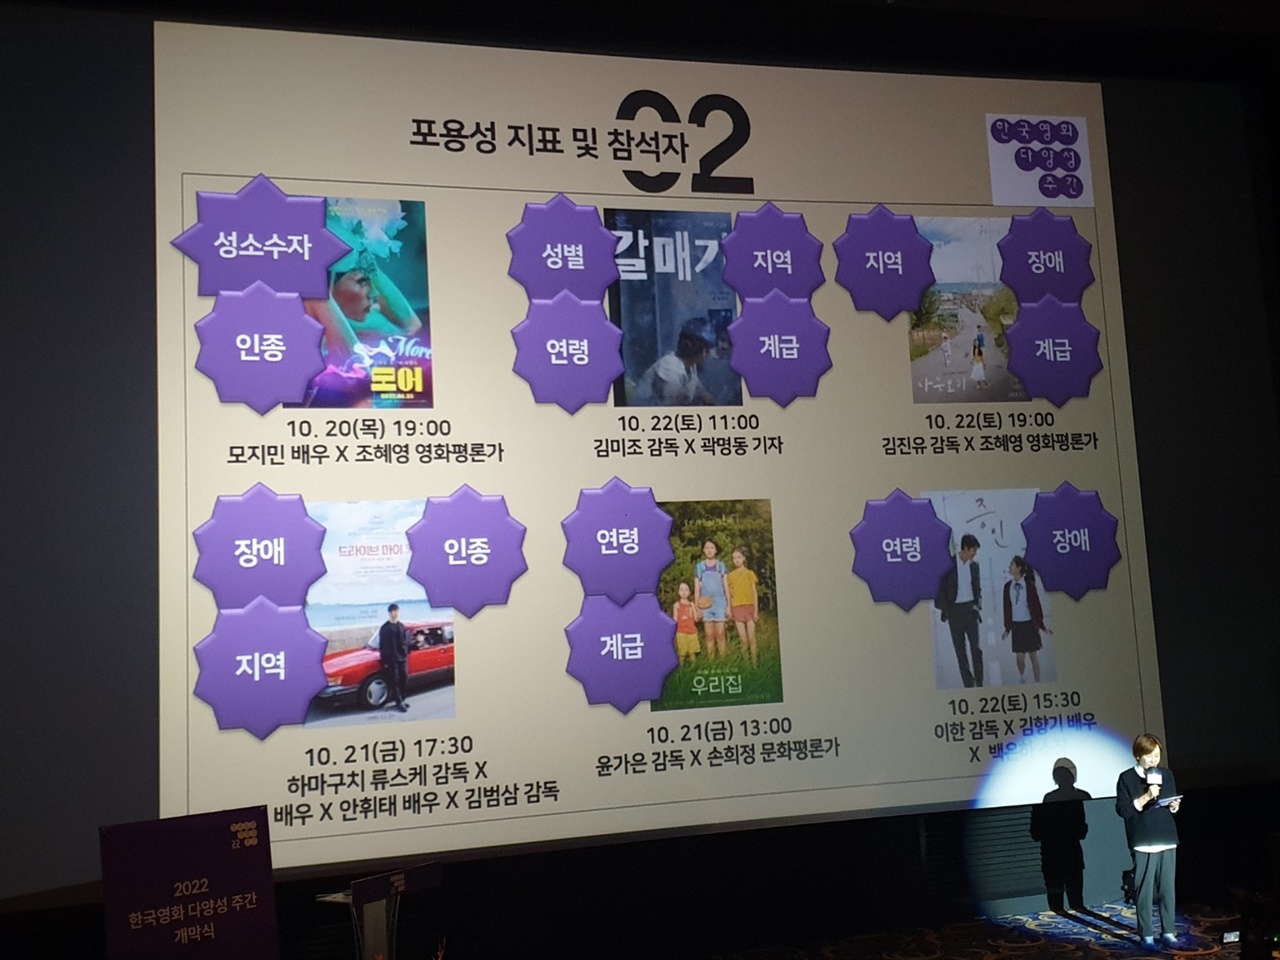  2022 한국영화 다양성 주간’ 행사가 20일 오후 6시 <모두가 모인 든든한 영화축제>라는 이름으로 홍대 인디스페이스에서 개막식을 시작으로 개최됐다.